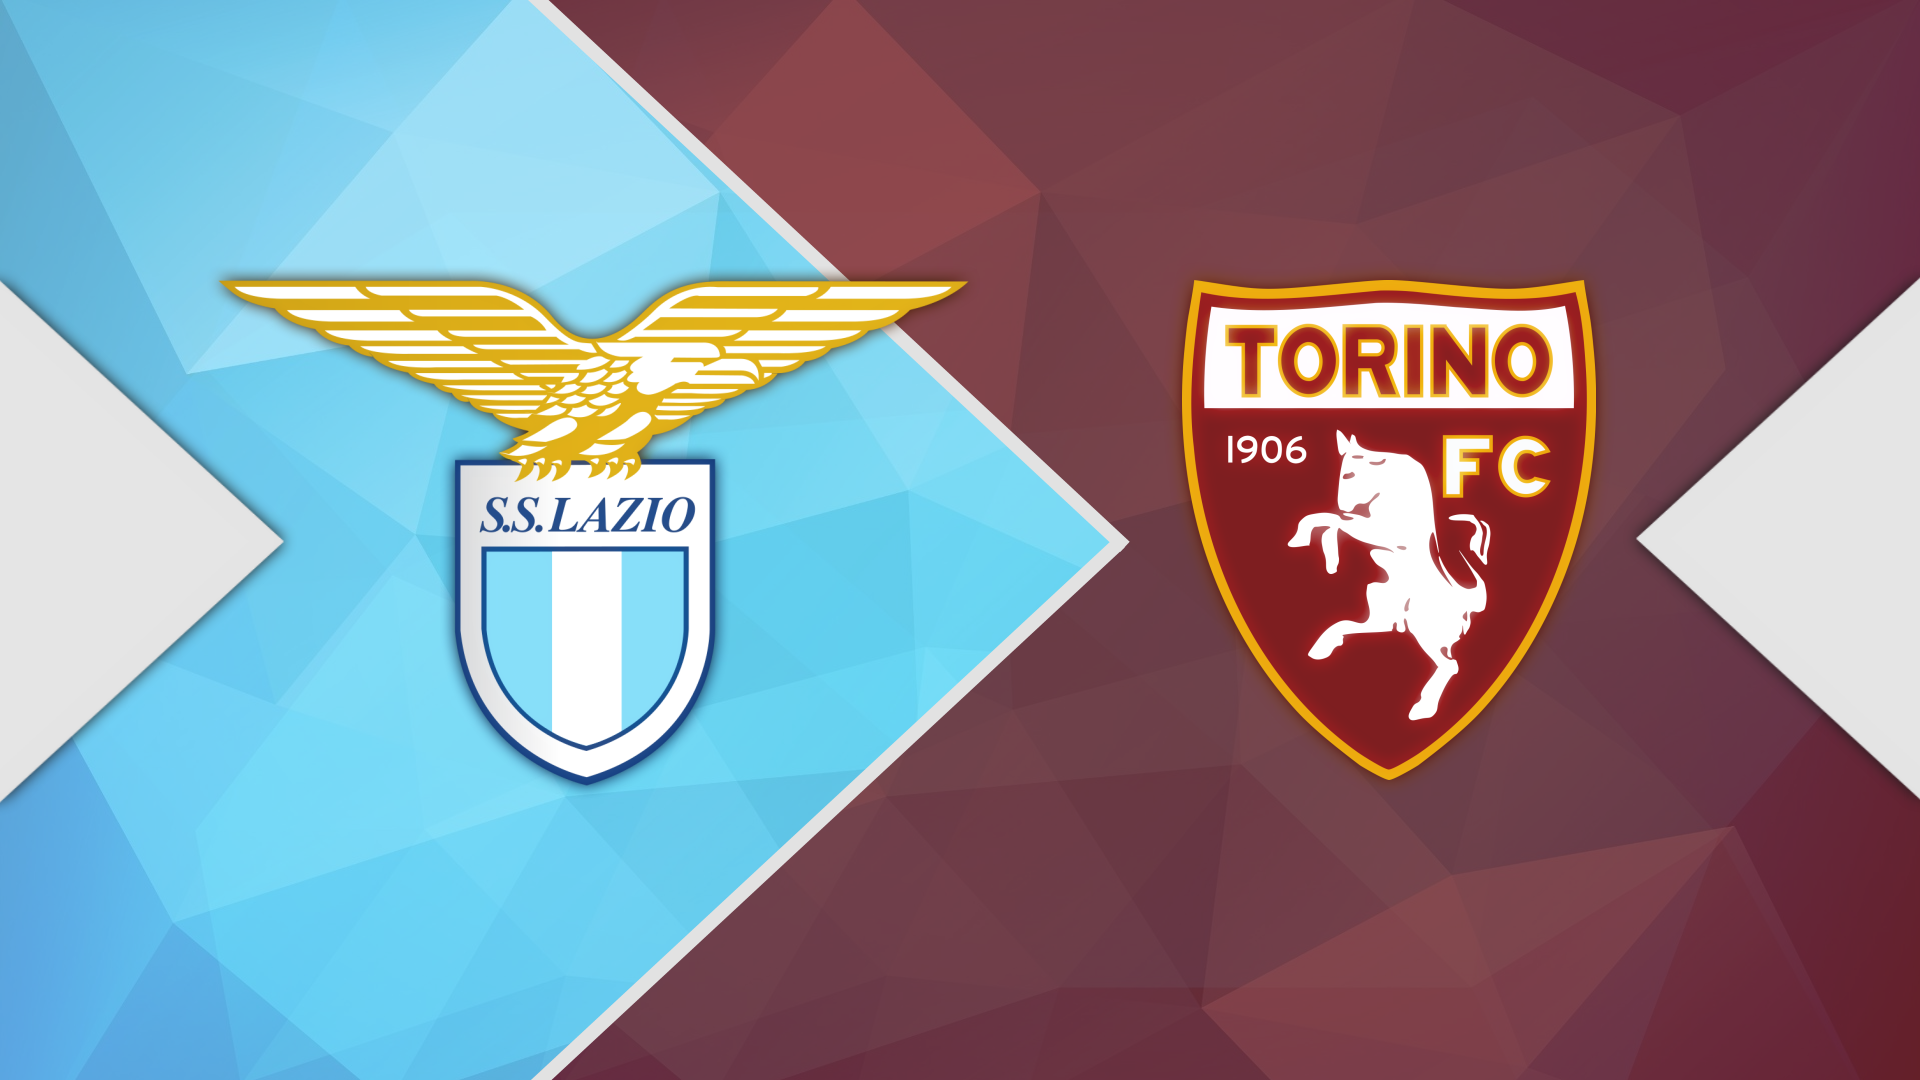 Dự đoán kết quả: Torino và Lazio